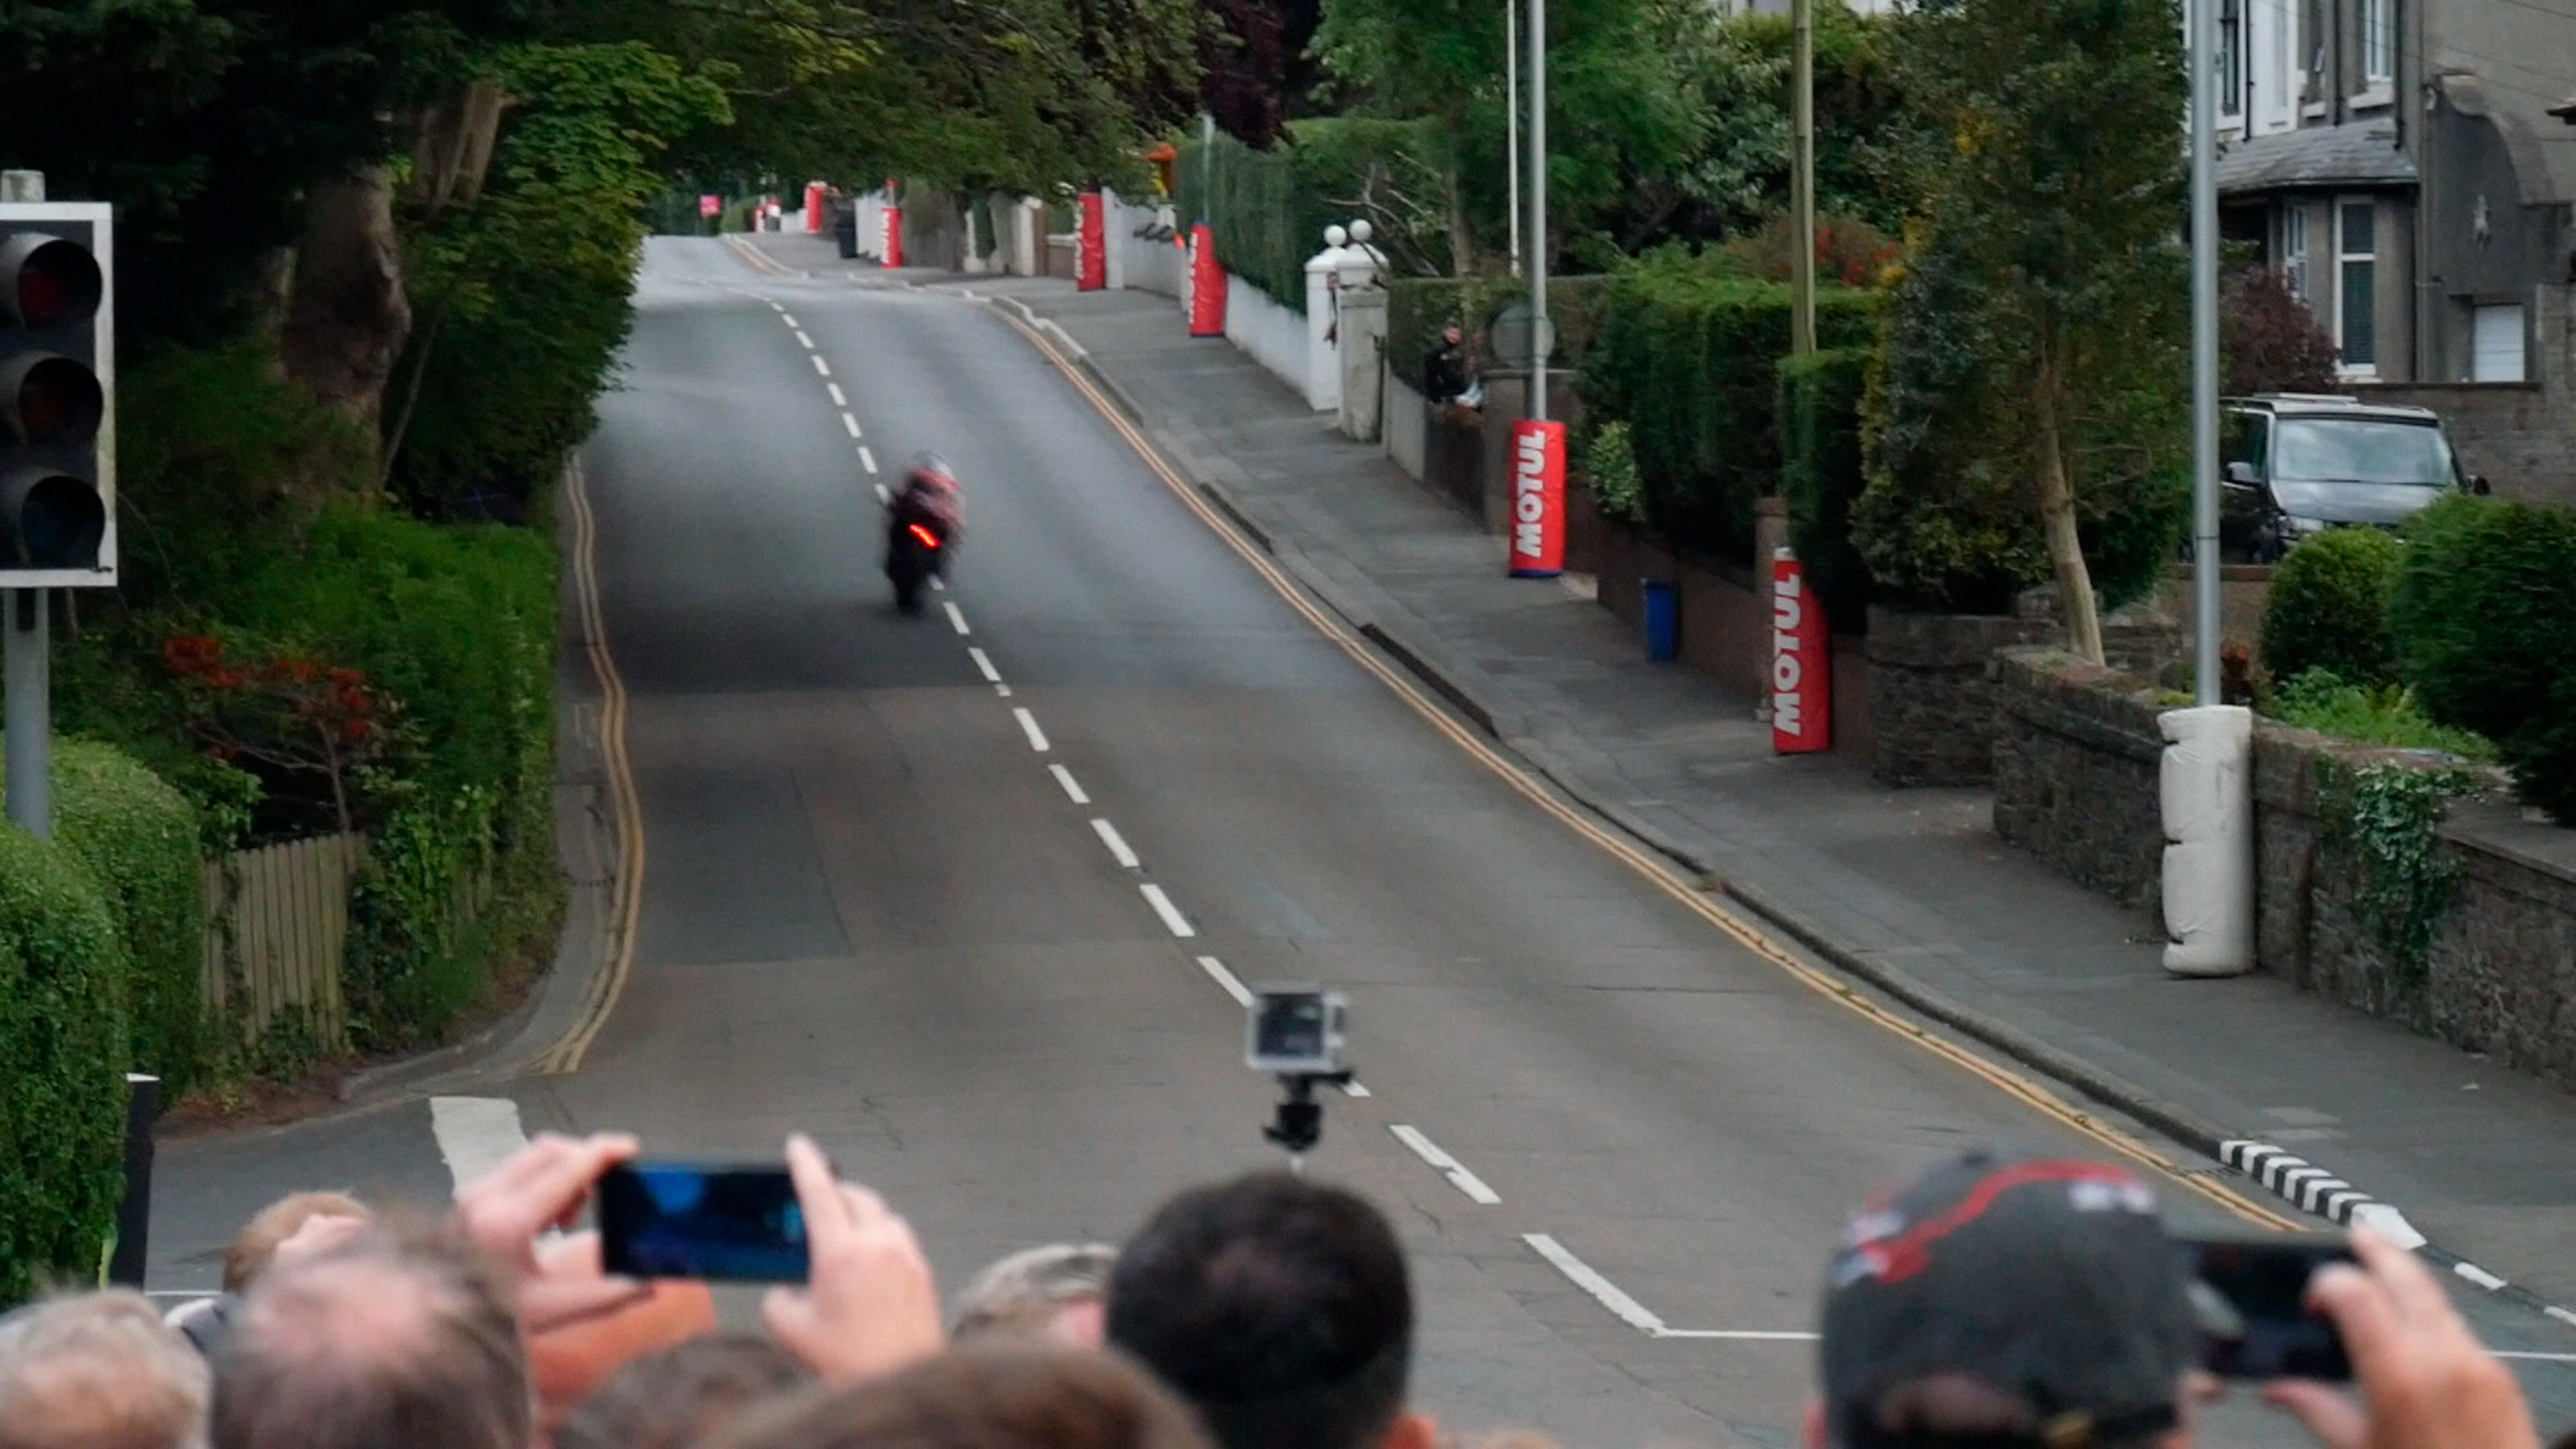 Moto del Supersport TT a más de 260 km/h en Bray Hill, en la subida tras la curva a derechas.